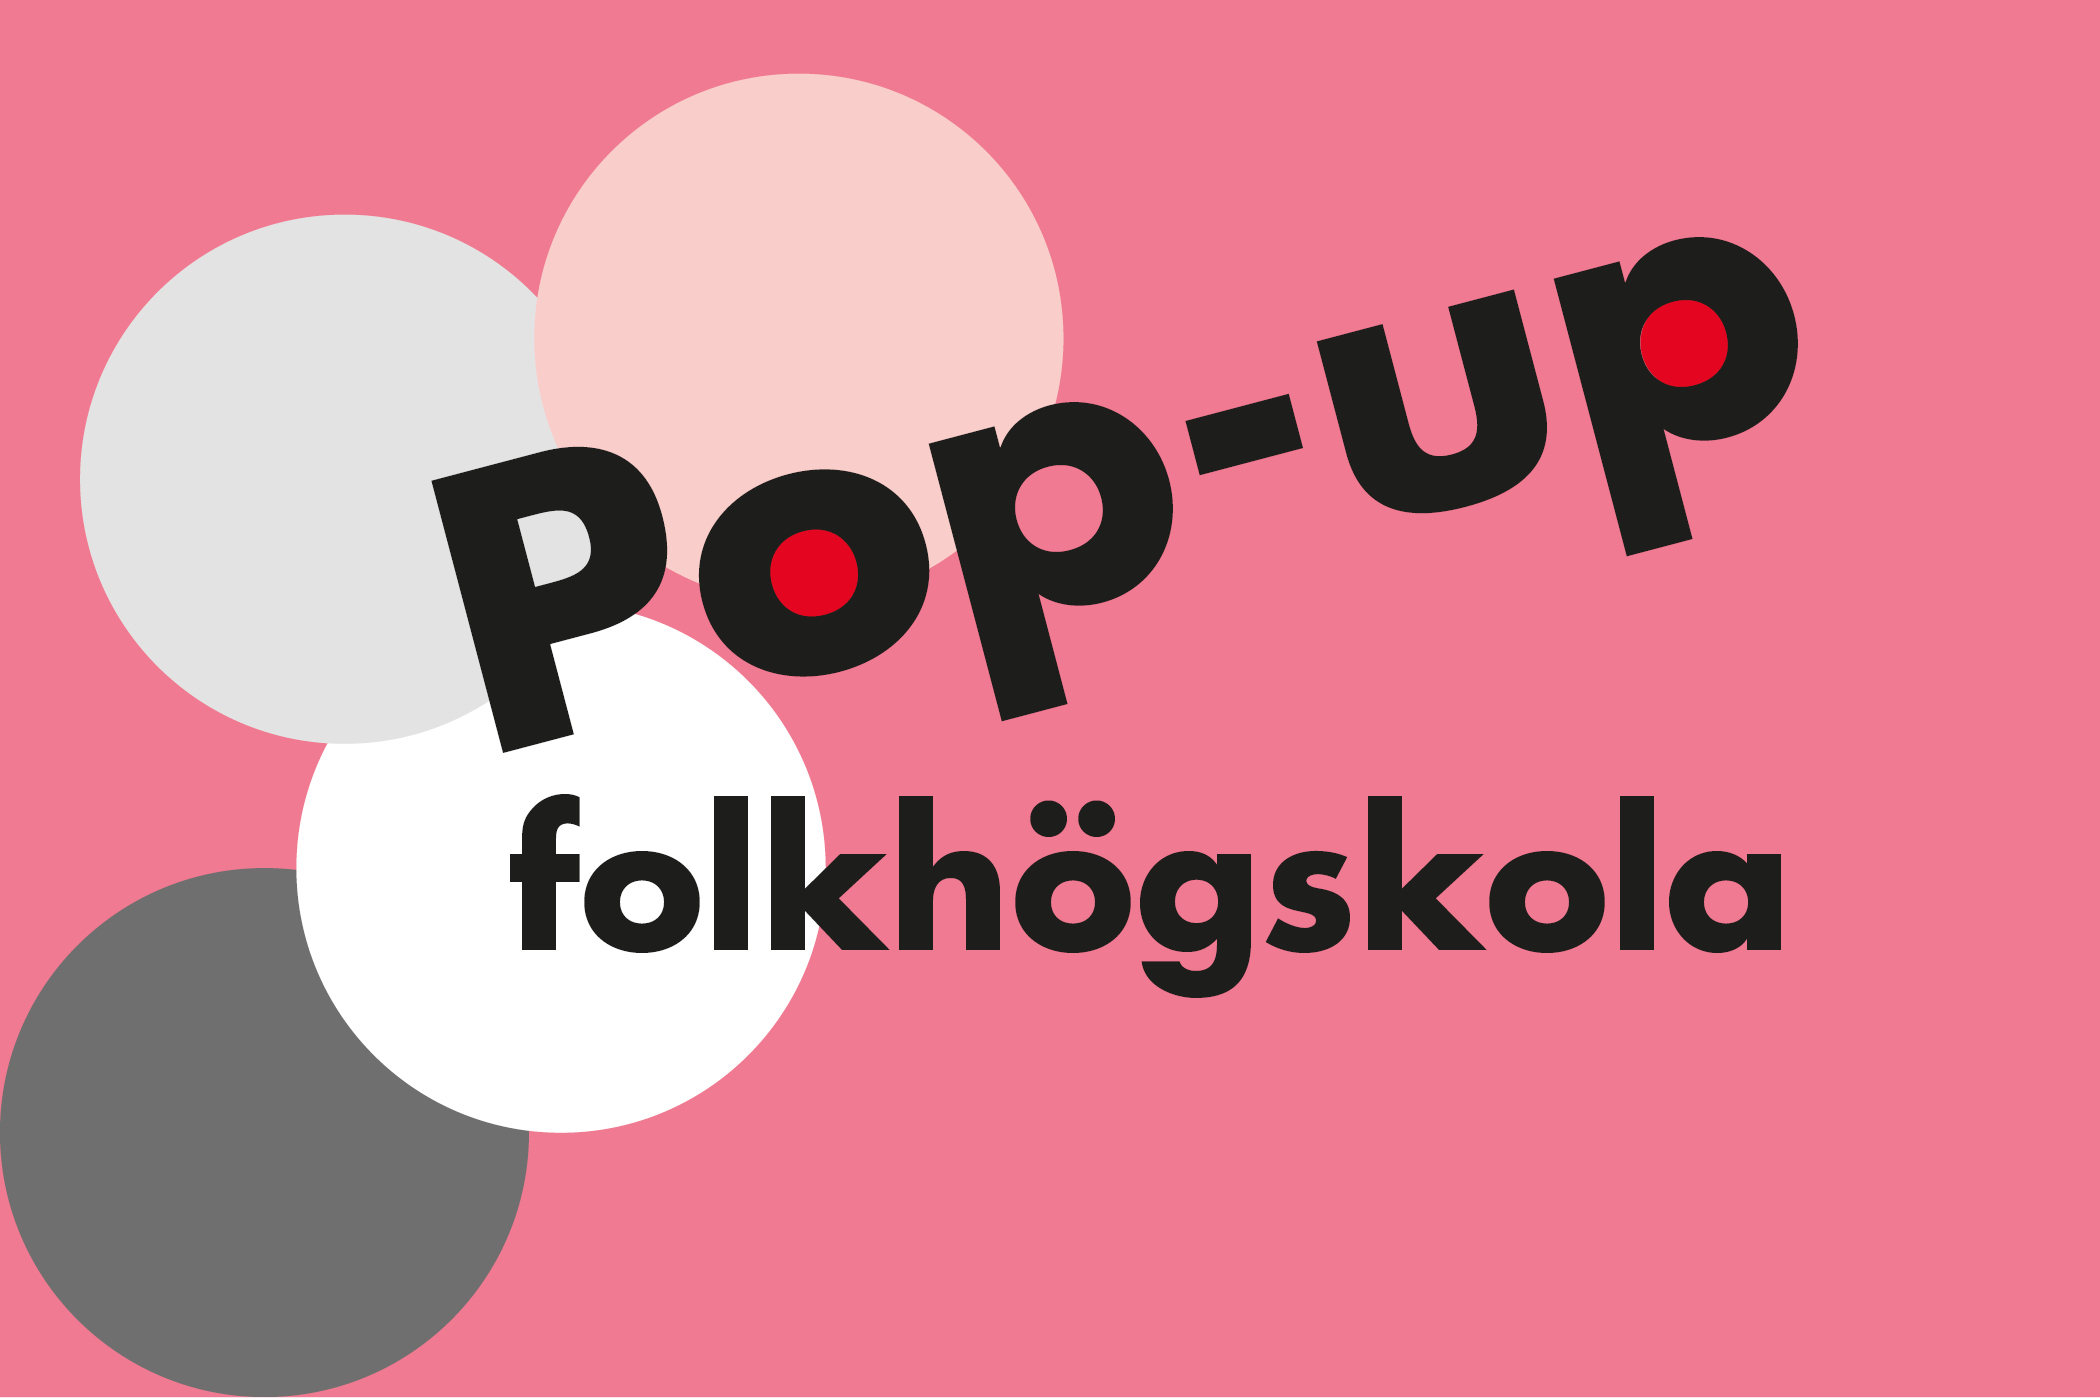 För tredje året i rad kör Röda Korsets folkhögskola konceptet "Pop-up folkhögskola" i Skärholmens centrum. Syftet är dels att visa att folkhögskolan finns i närområdet och att berätta mer om folkhögskola som utbildningsform, dels att skapa en plattform för möten och samverkan med andra lokala aktörer. Öppet 22 mars till 5 maj!